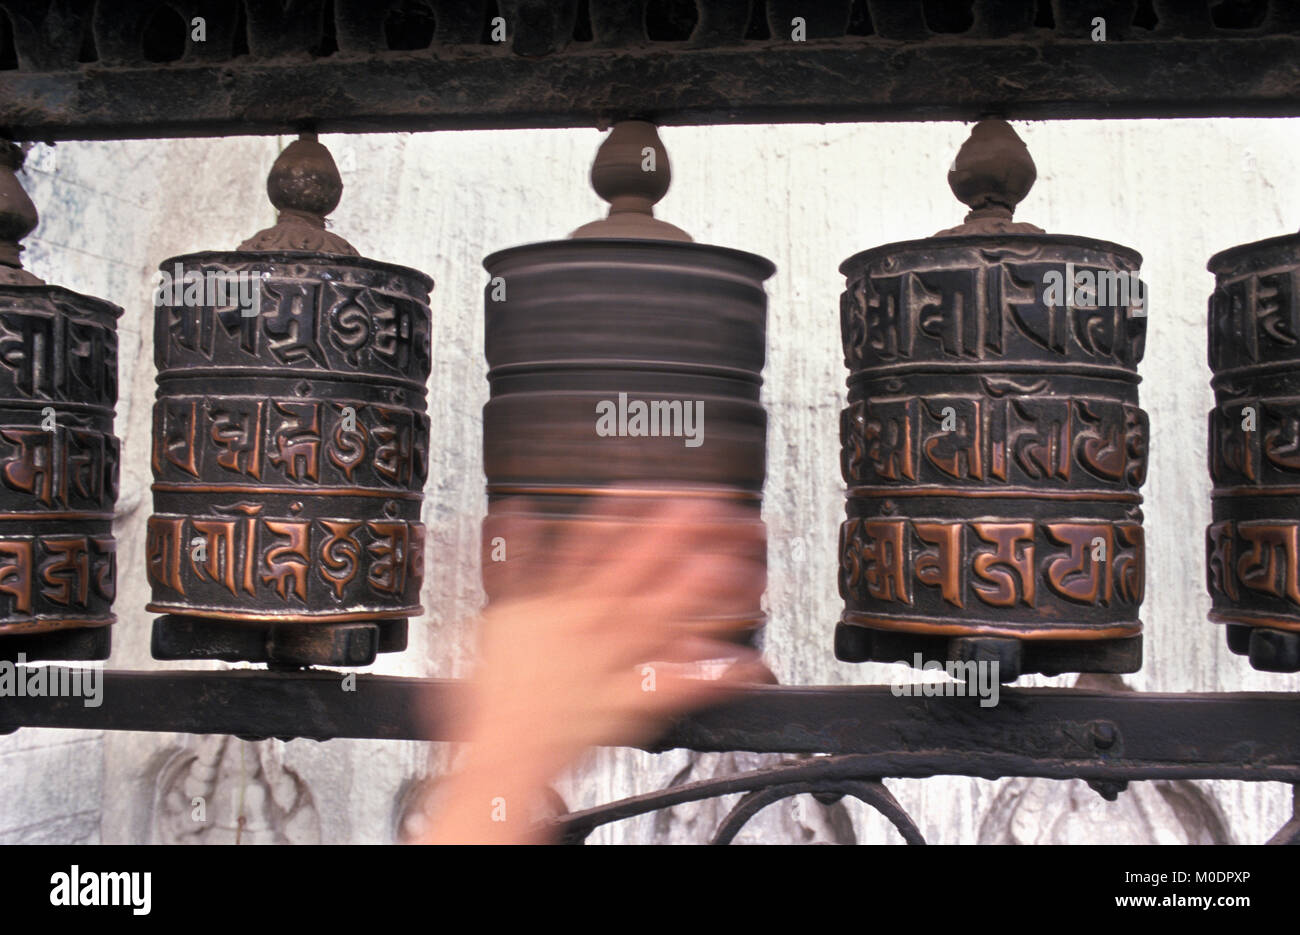 Nepal, Kathmandu. Swayambhunath temple, stupa (Buddhism). Hand spinning prayer wheel. Stock Photo